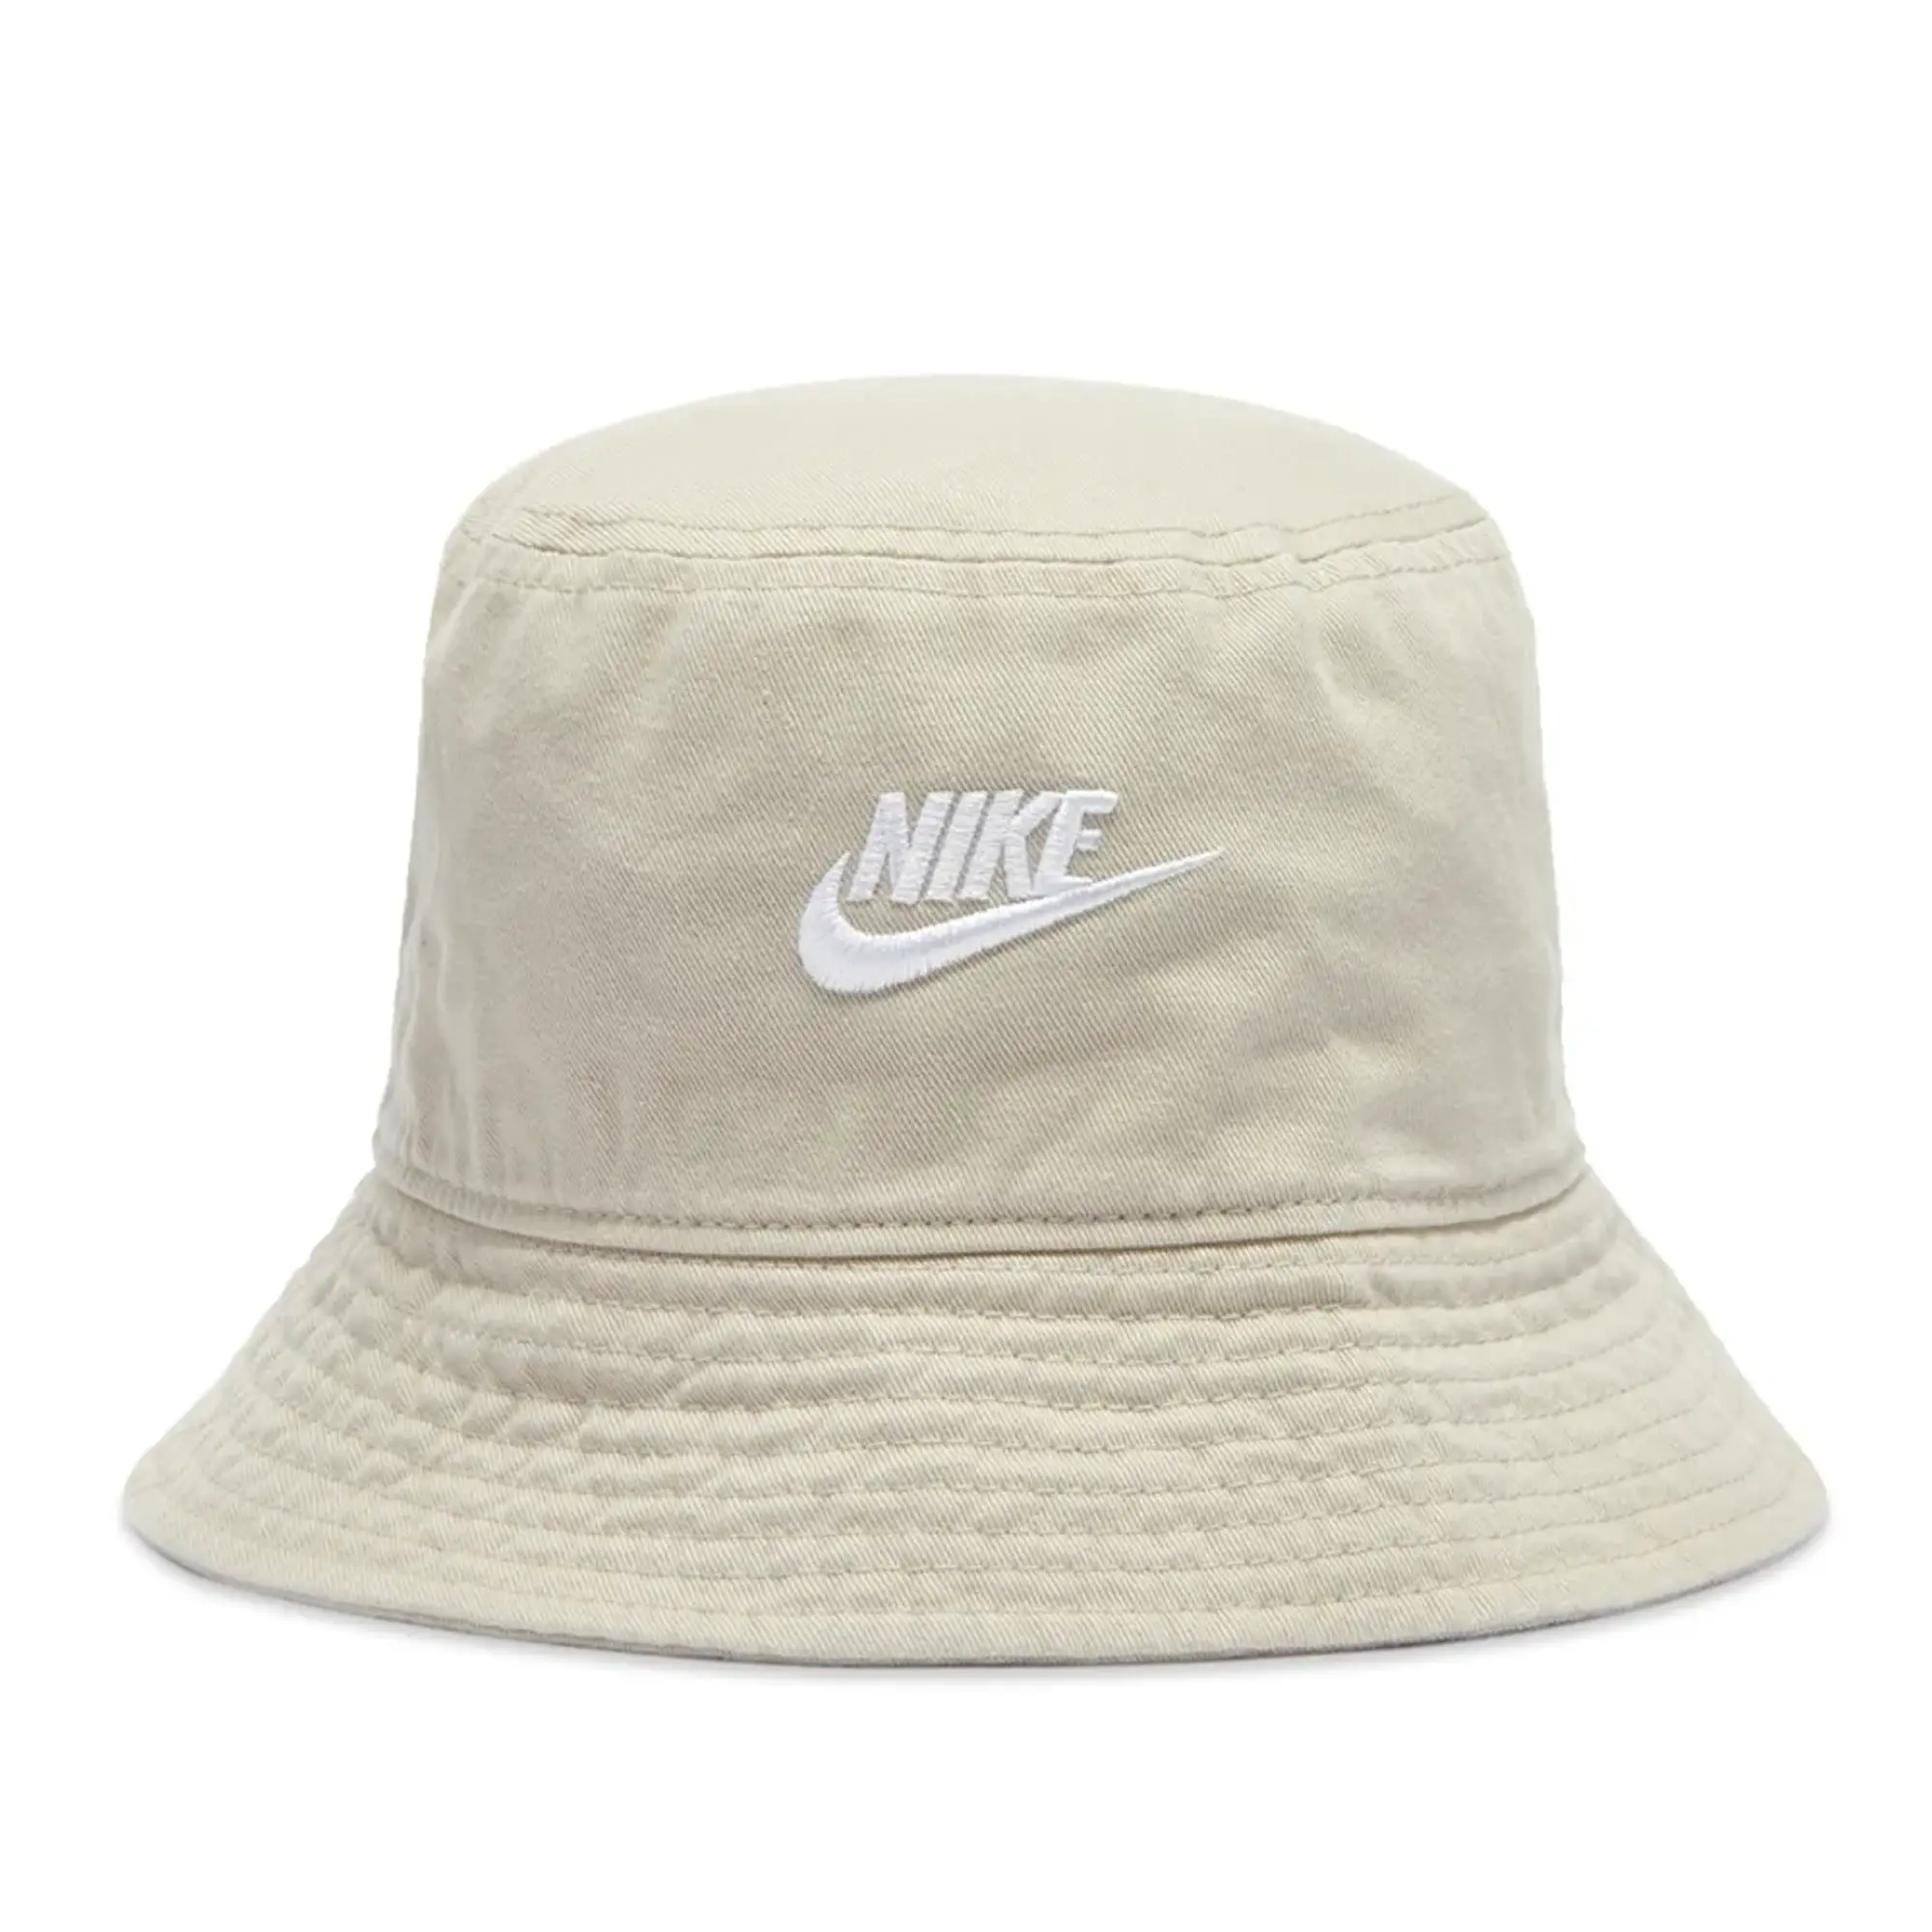 Nike Bucket Hat - Beige